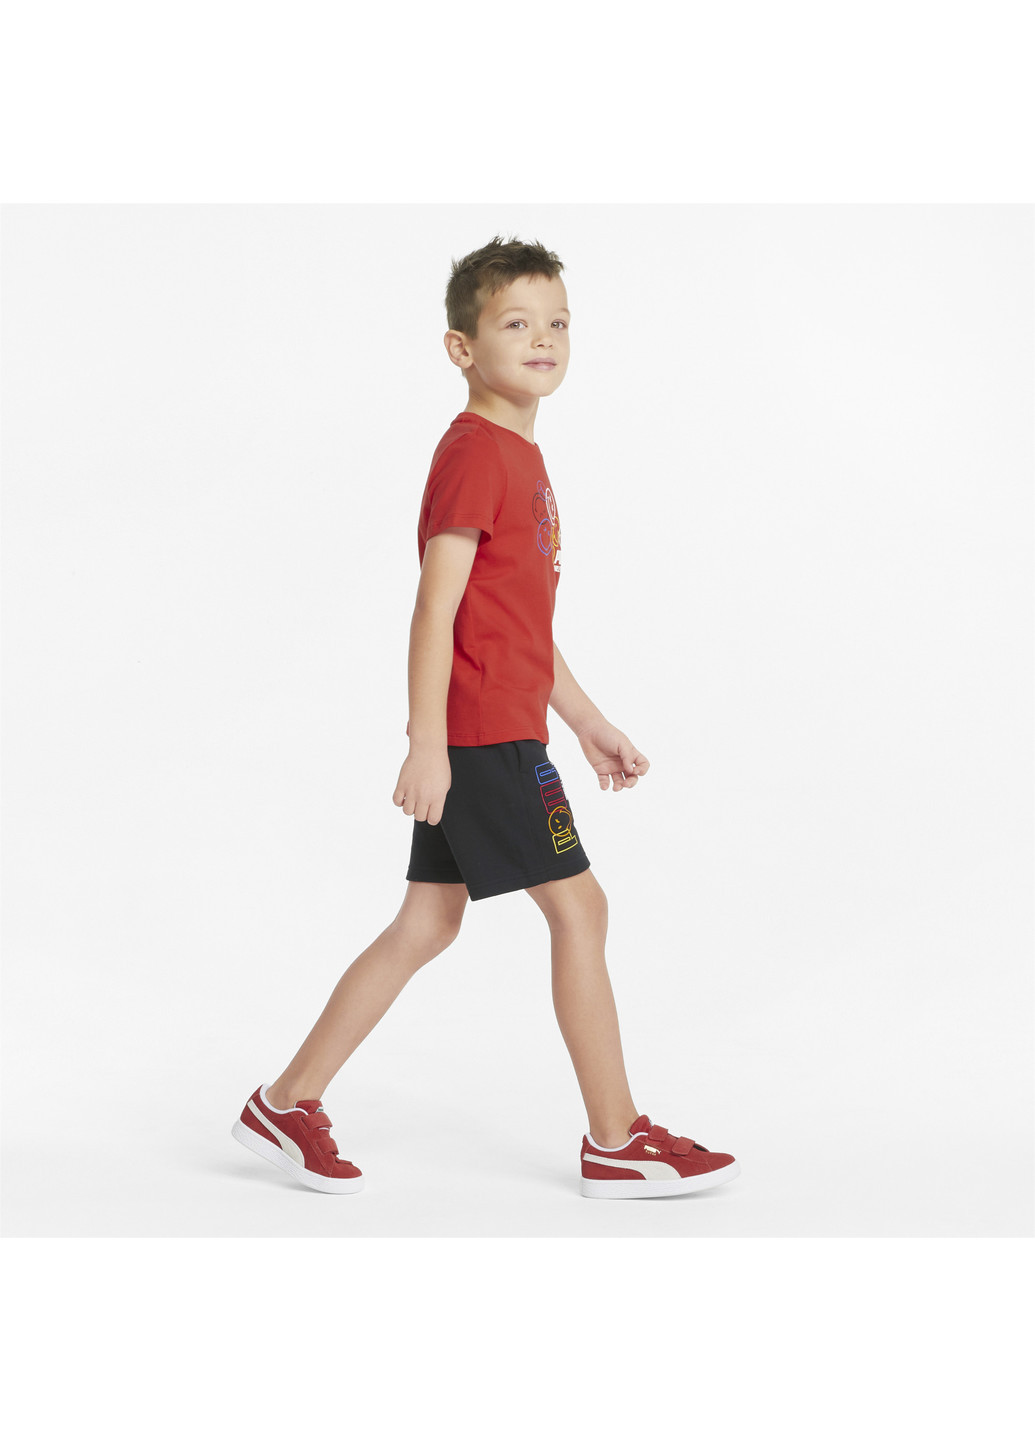 Детские шорты x SMILEY WORLD Kids' Shorts Puma однотонные чёрные спортивные хлопок, полиэстер